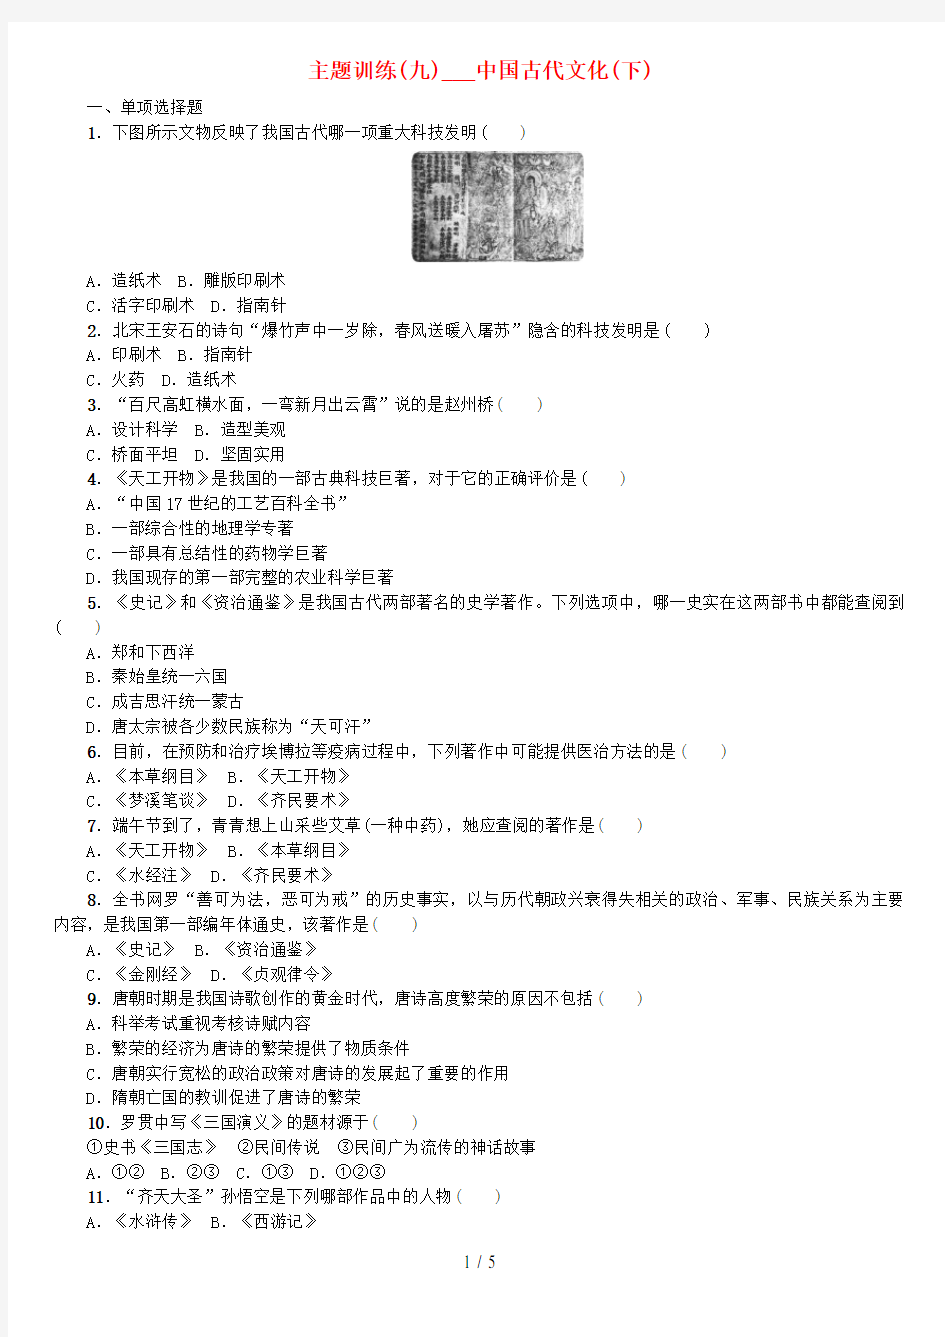 (重庆专版)中考历史复习教材梳理第一部分中国古代史第九主题中国古代文化(下)课时作业